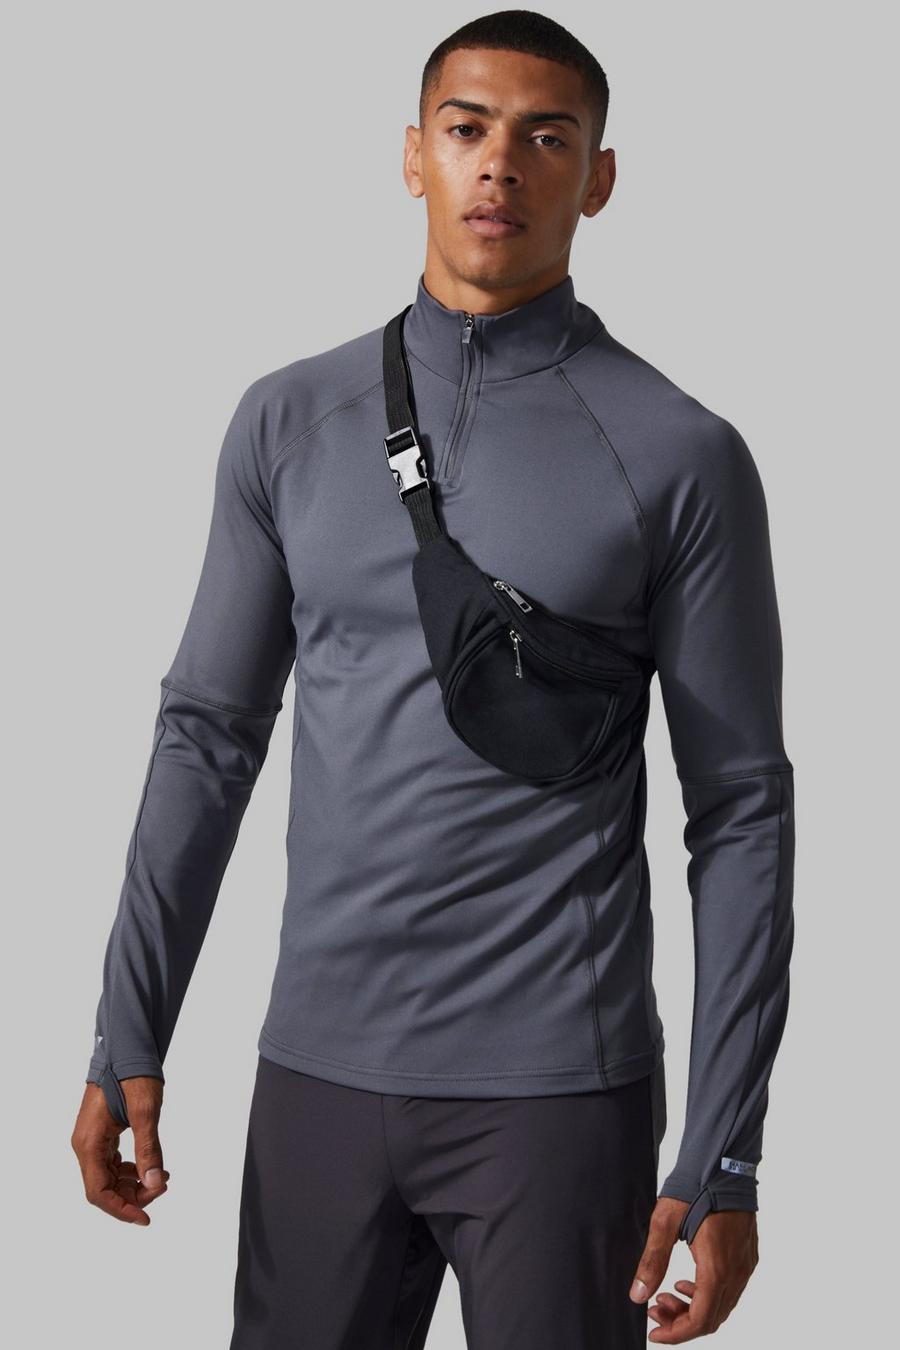 Charcoal gris חולצה ספורטיבית צמודה לאימונים עם שרוולים ארוכים, 1/4 רוכסן וכיתוב Man